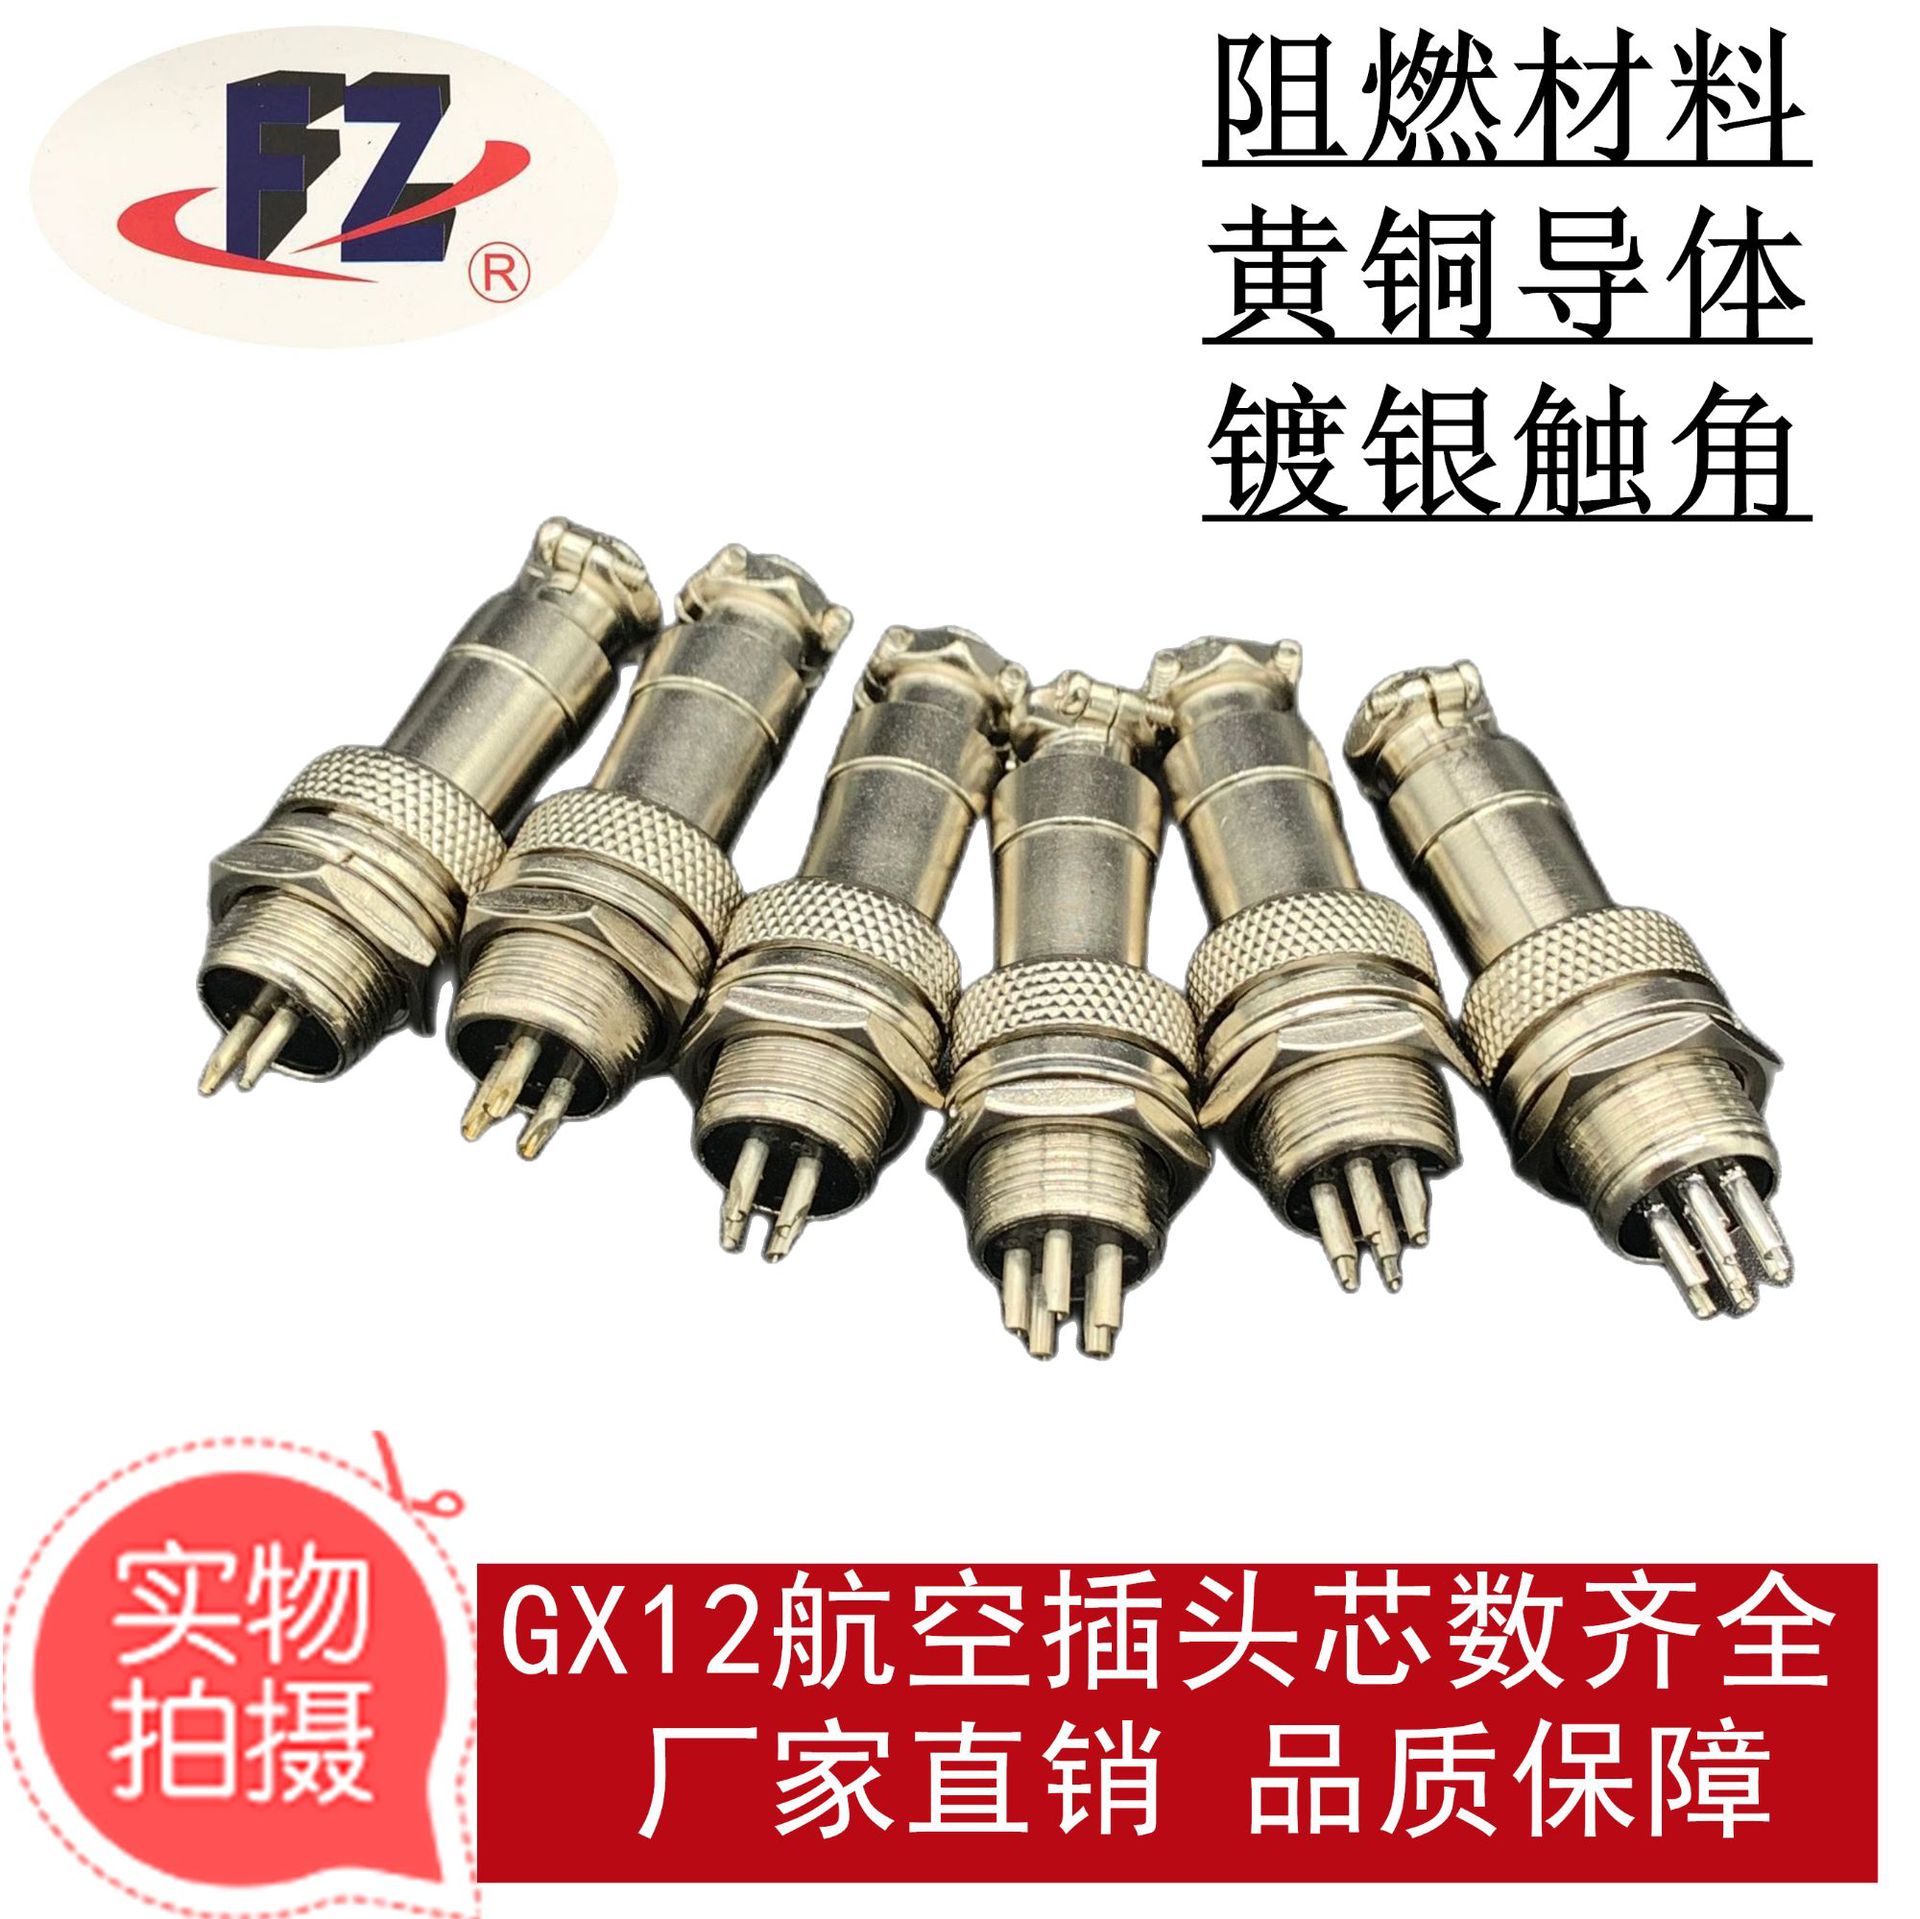 厂家直销供应各类GX12 12MM航空插头2-7连接器插头GX12 2-7芯插件